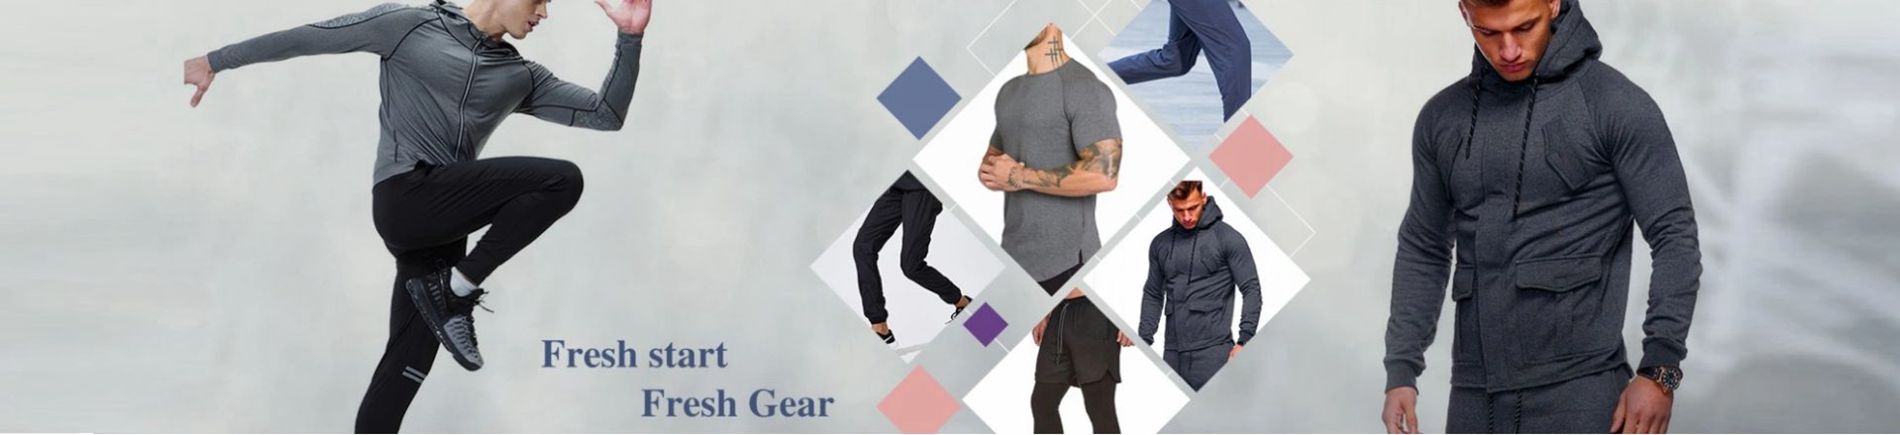 Shenzhen clothing link Co.,Ltd